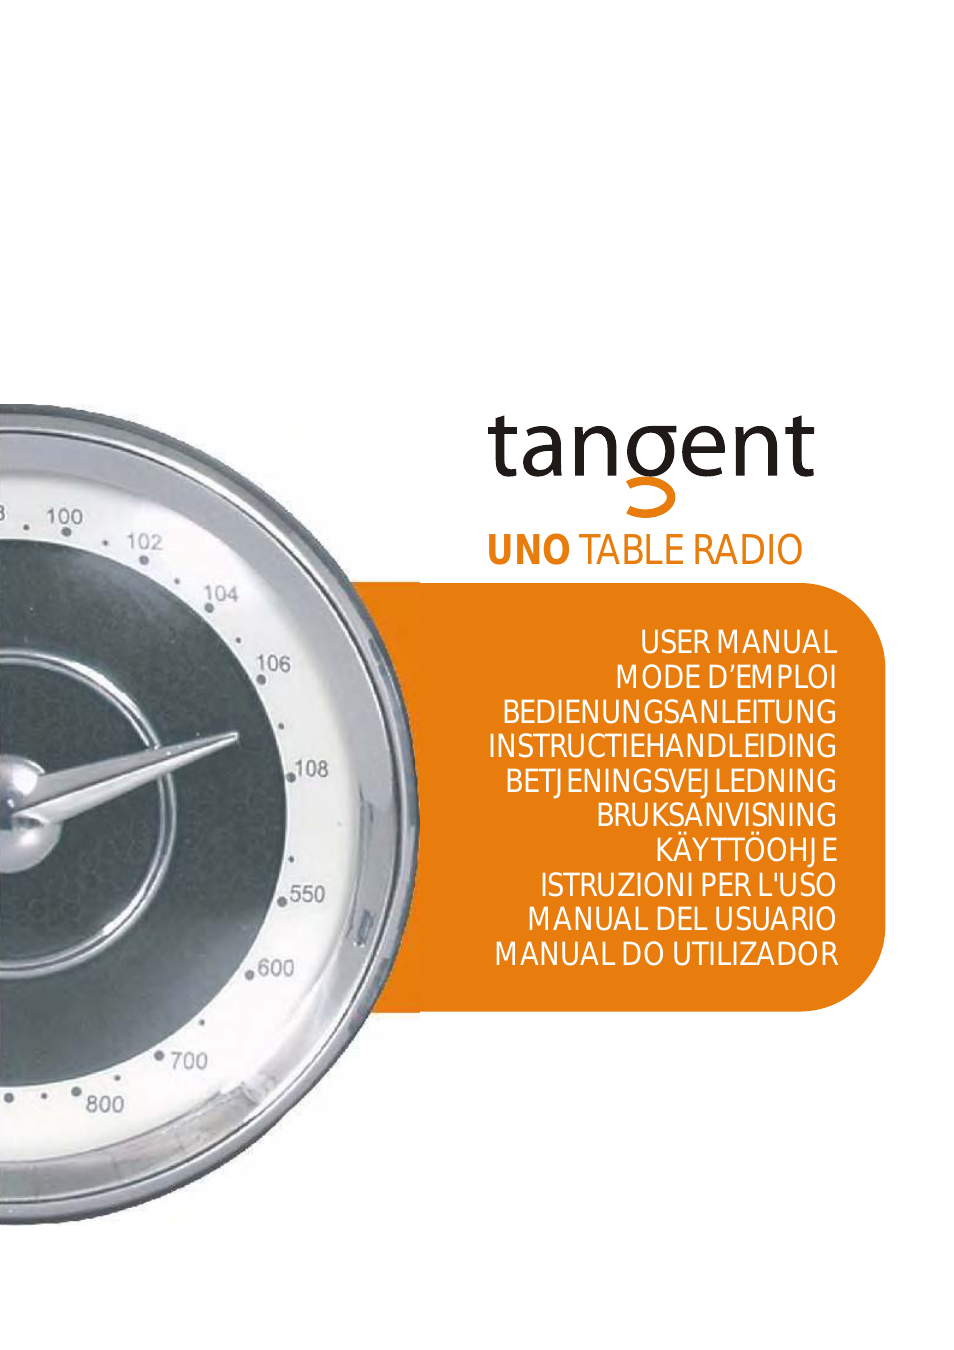 Uno Table Radio